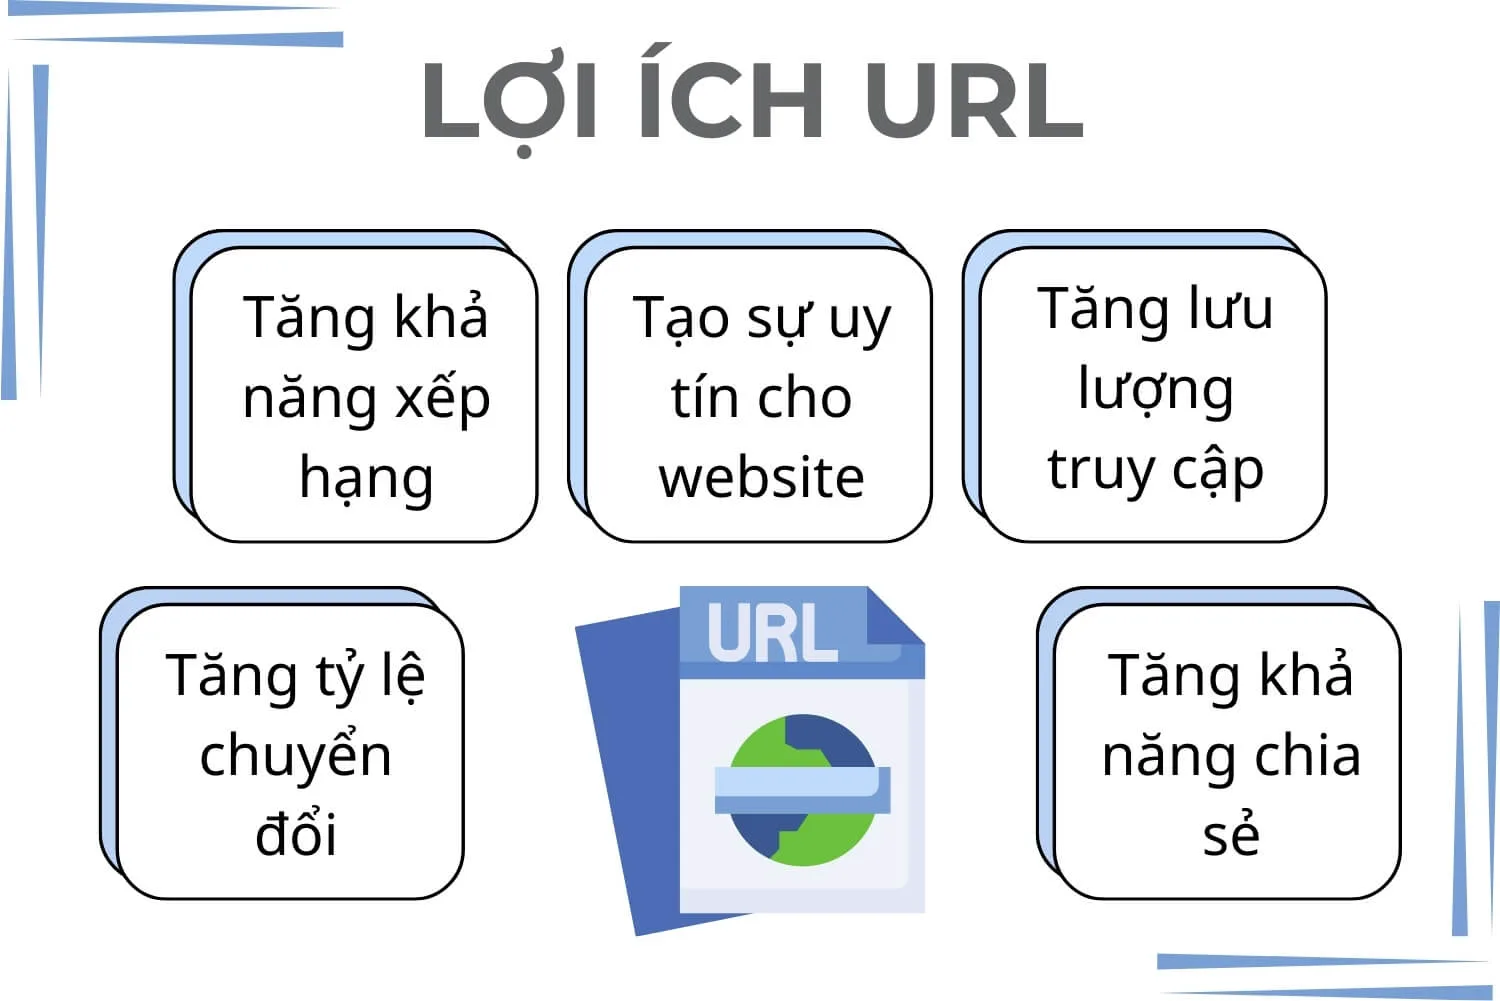 Lợi ích của việc tối ưu hóa URL cho SEO